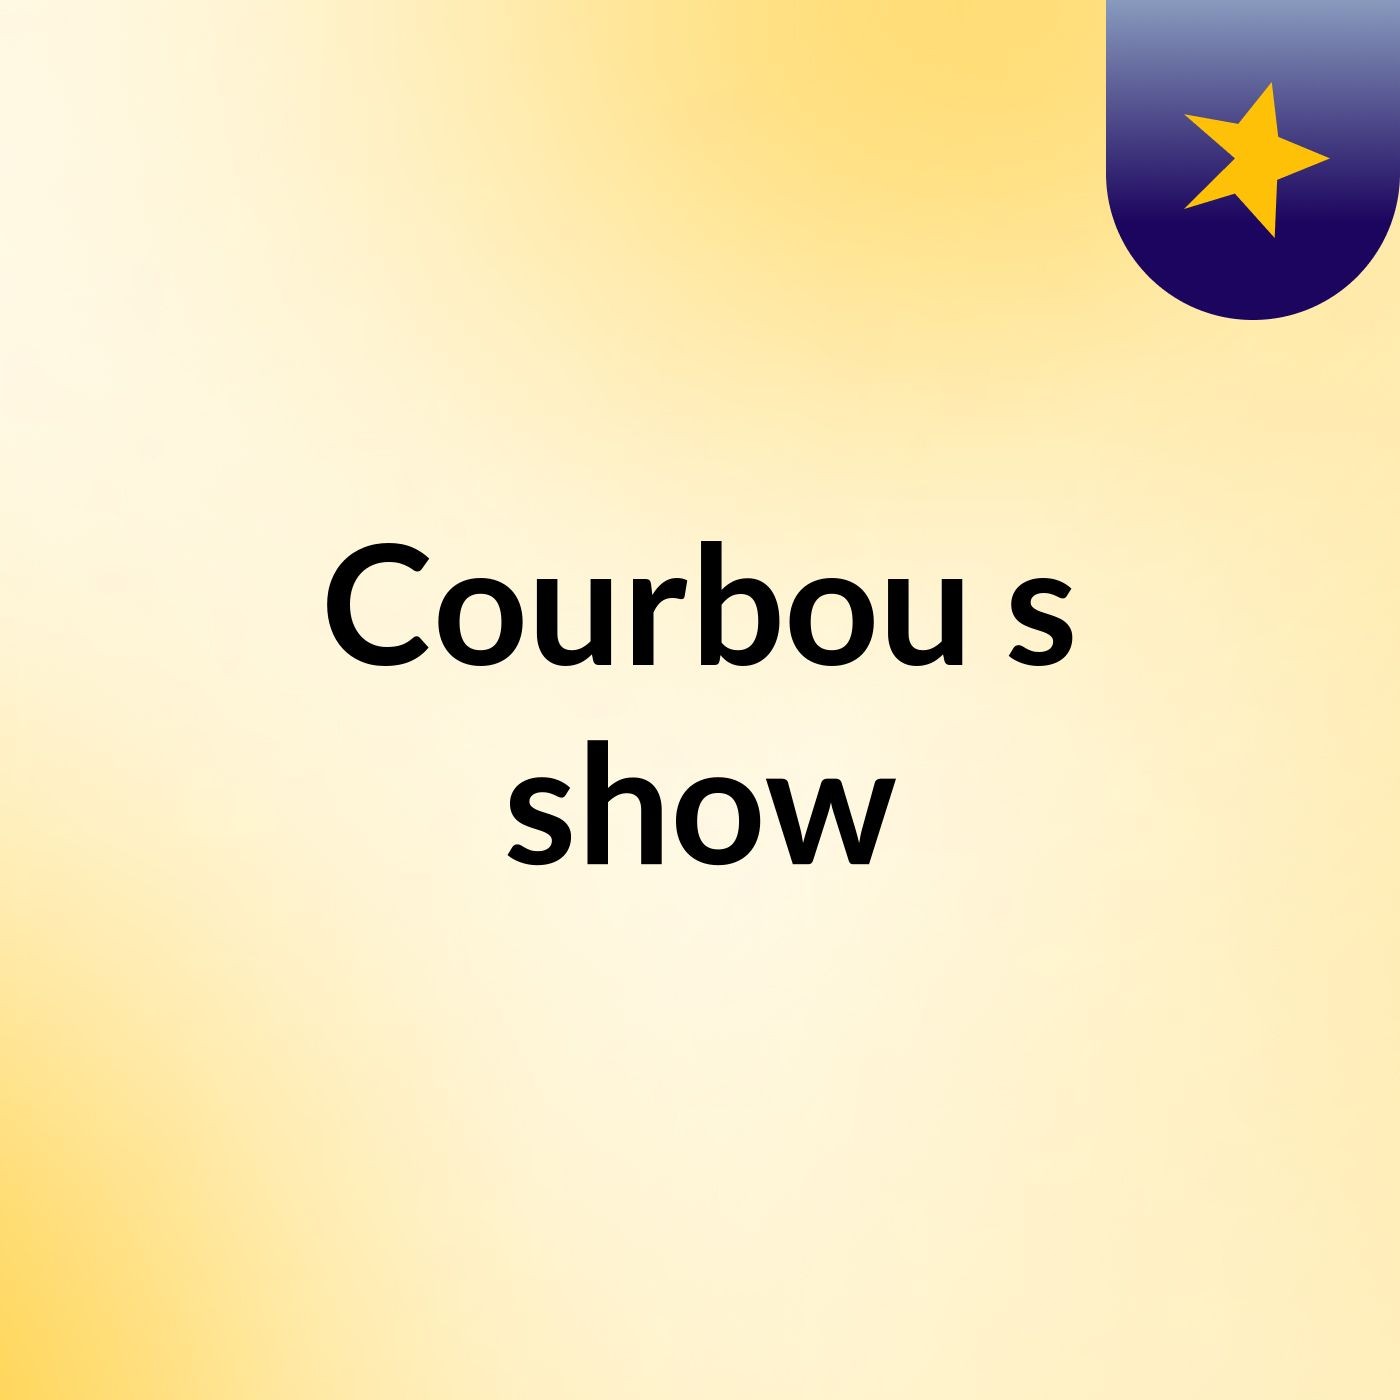 Courbou's show